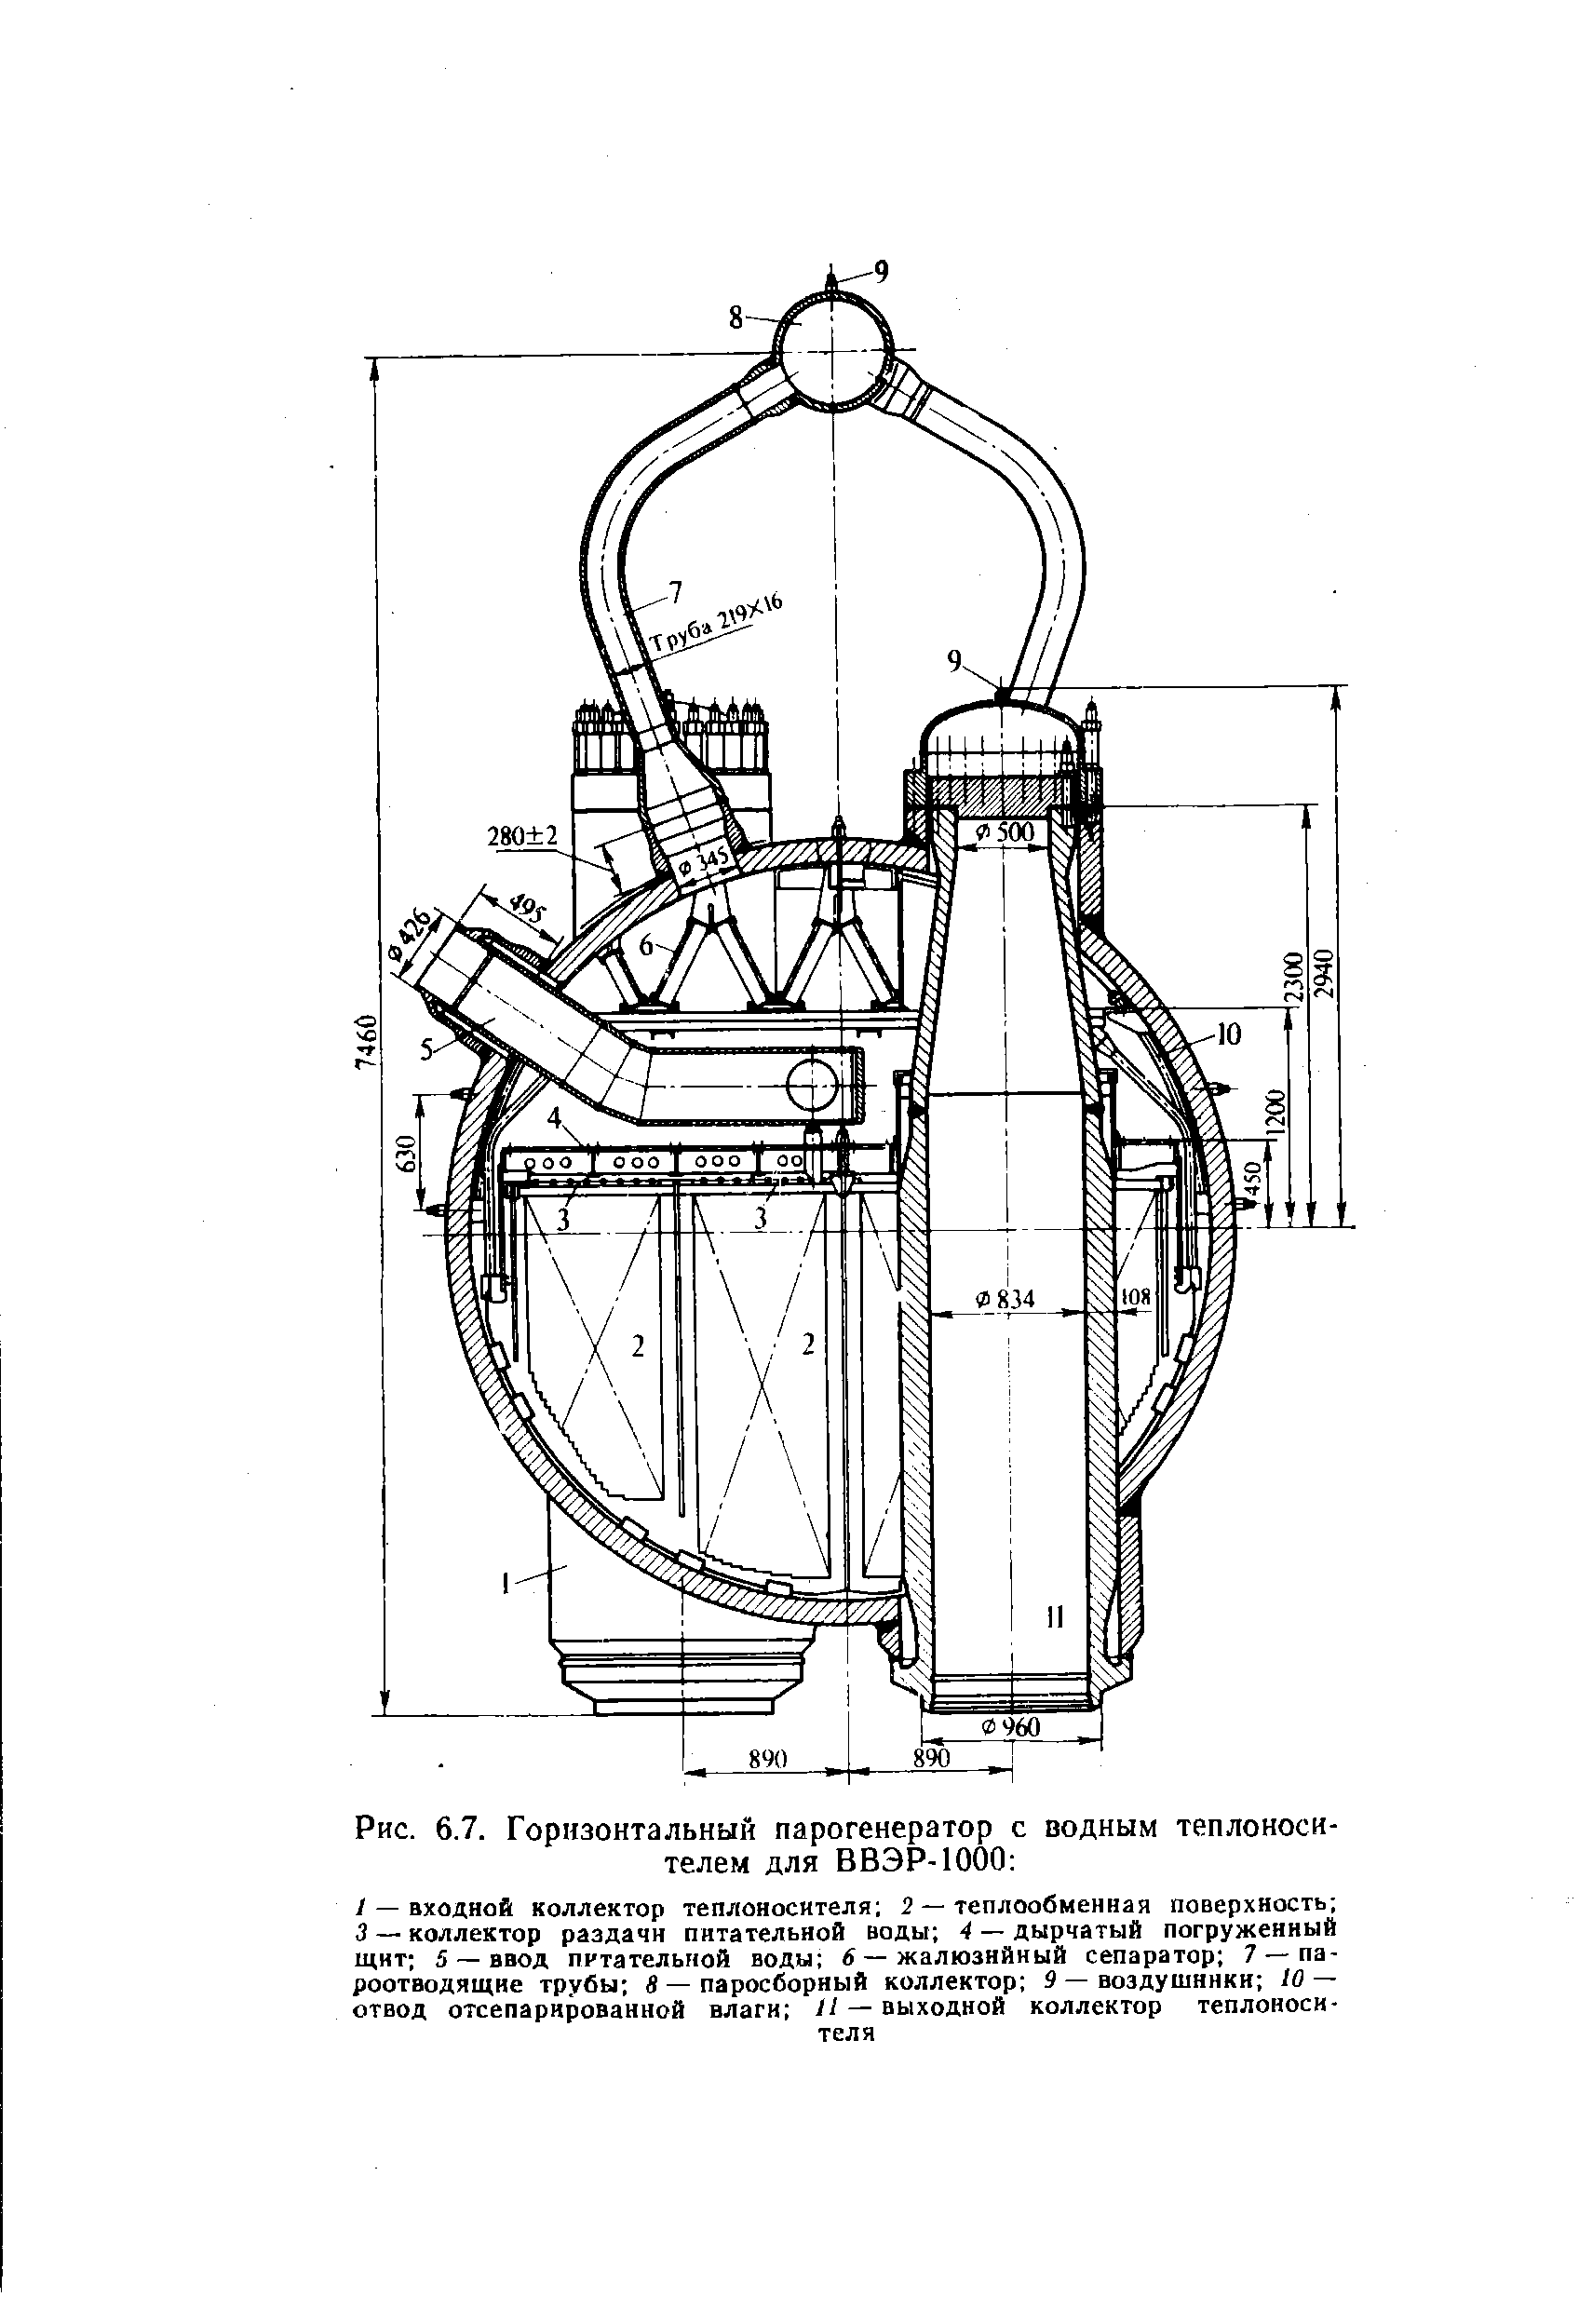 Рис. 6.7. Горизонтальный парогенератор с водным теплоносителем для ВВЭР-1000 
